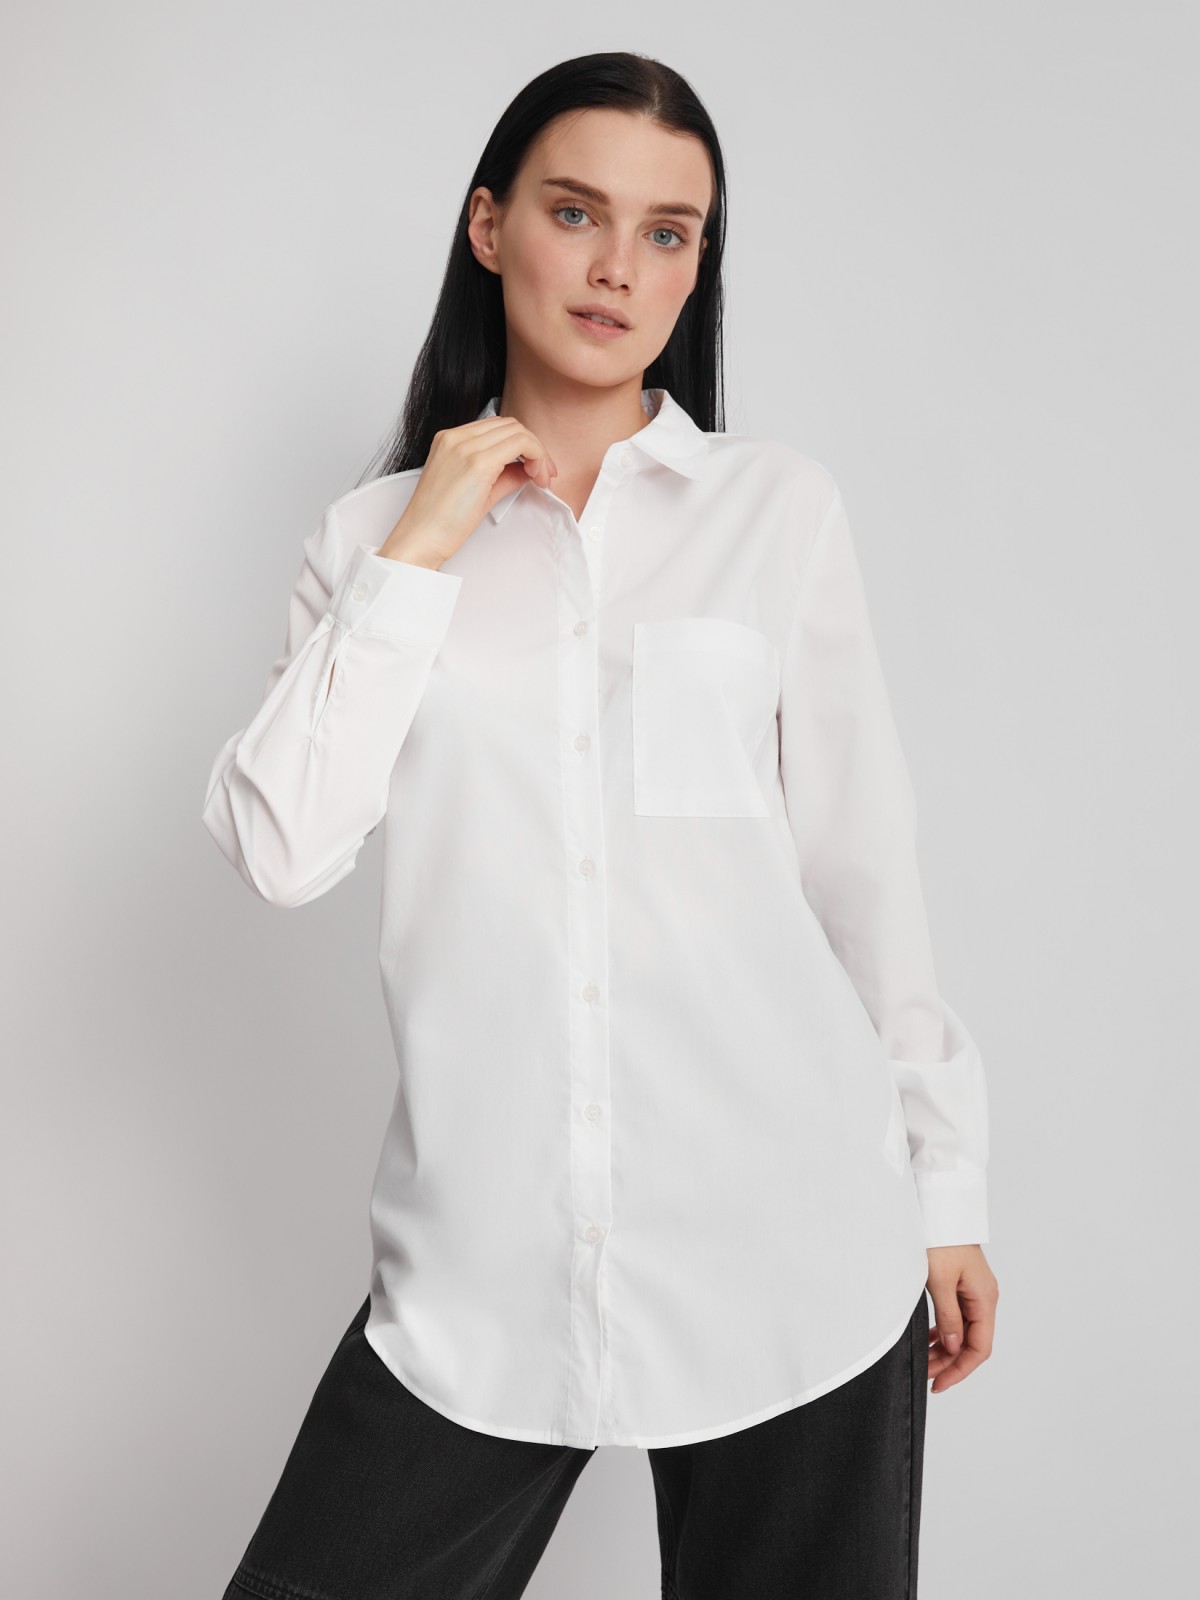 Офисная рубашка прямого силуэта с принтом на спине zolla 22231117Y353, цвет белый, размер S - фото 1